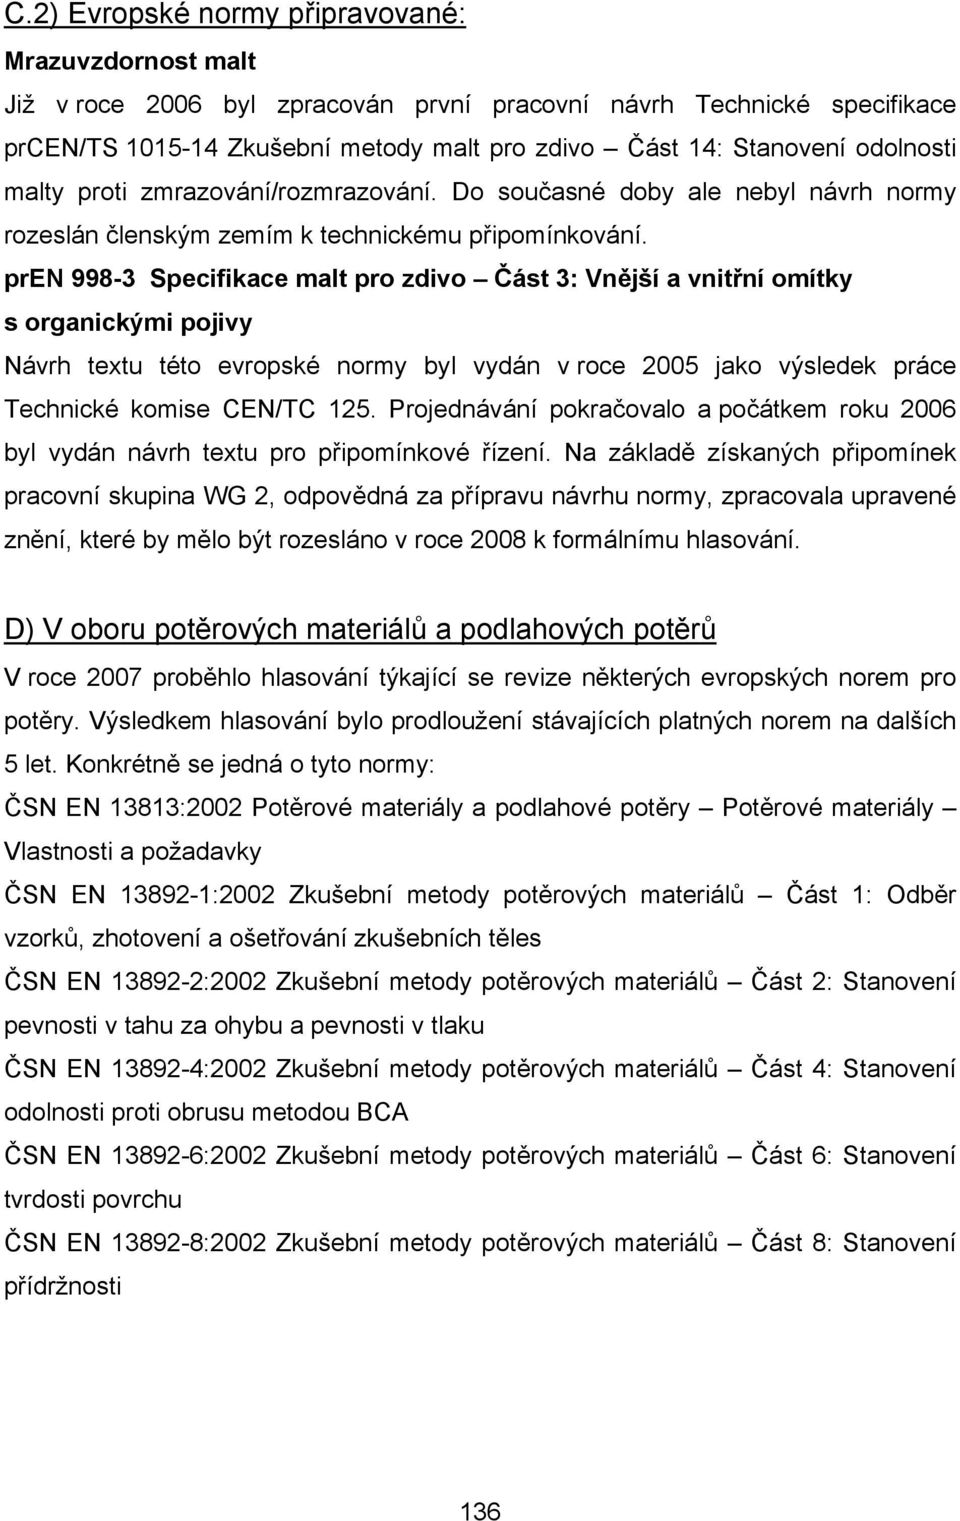 pren 998-3 Specifikace malt pro zdivo Část 3: Vnější a vnitřní omítky s organickými pojivy Návrh textu této evropské normy byl vydán v roce 2005 jako výsledek práce Technické komise CEN/TC 125.